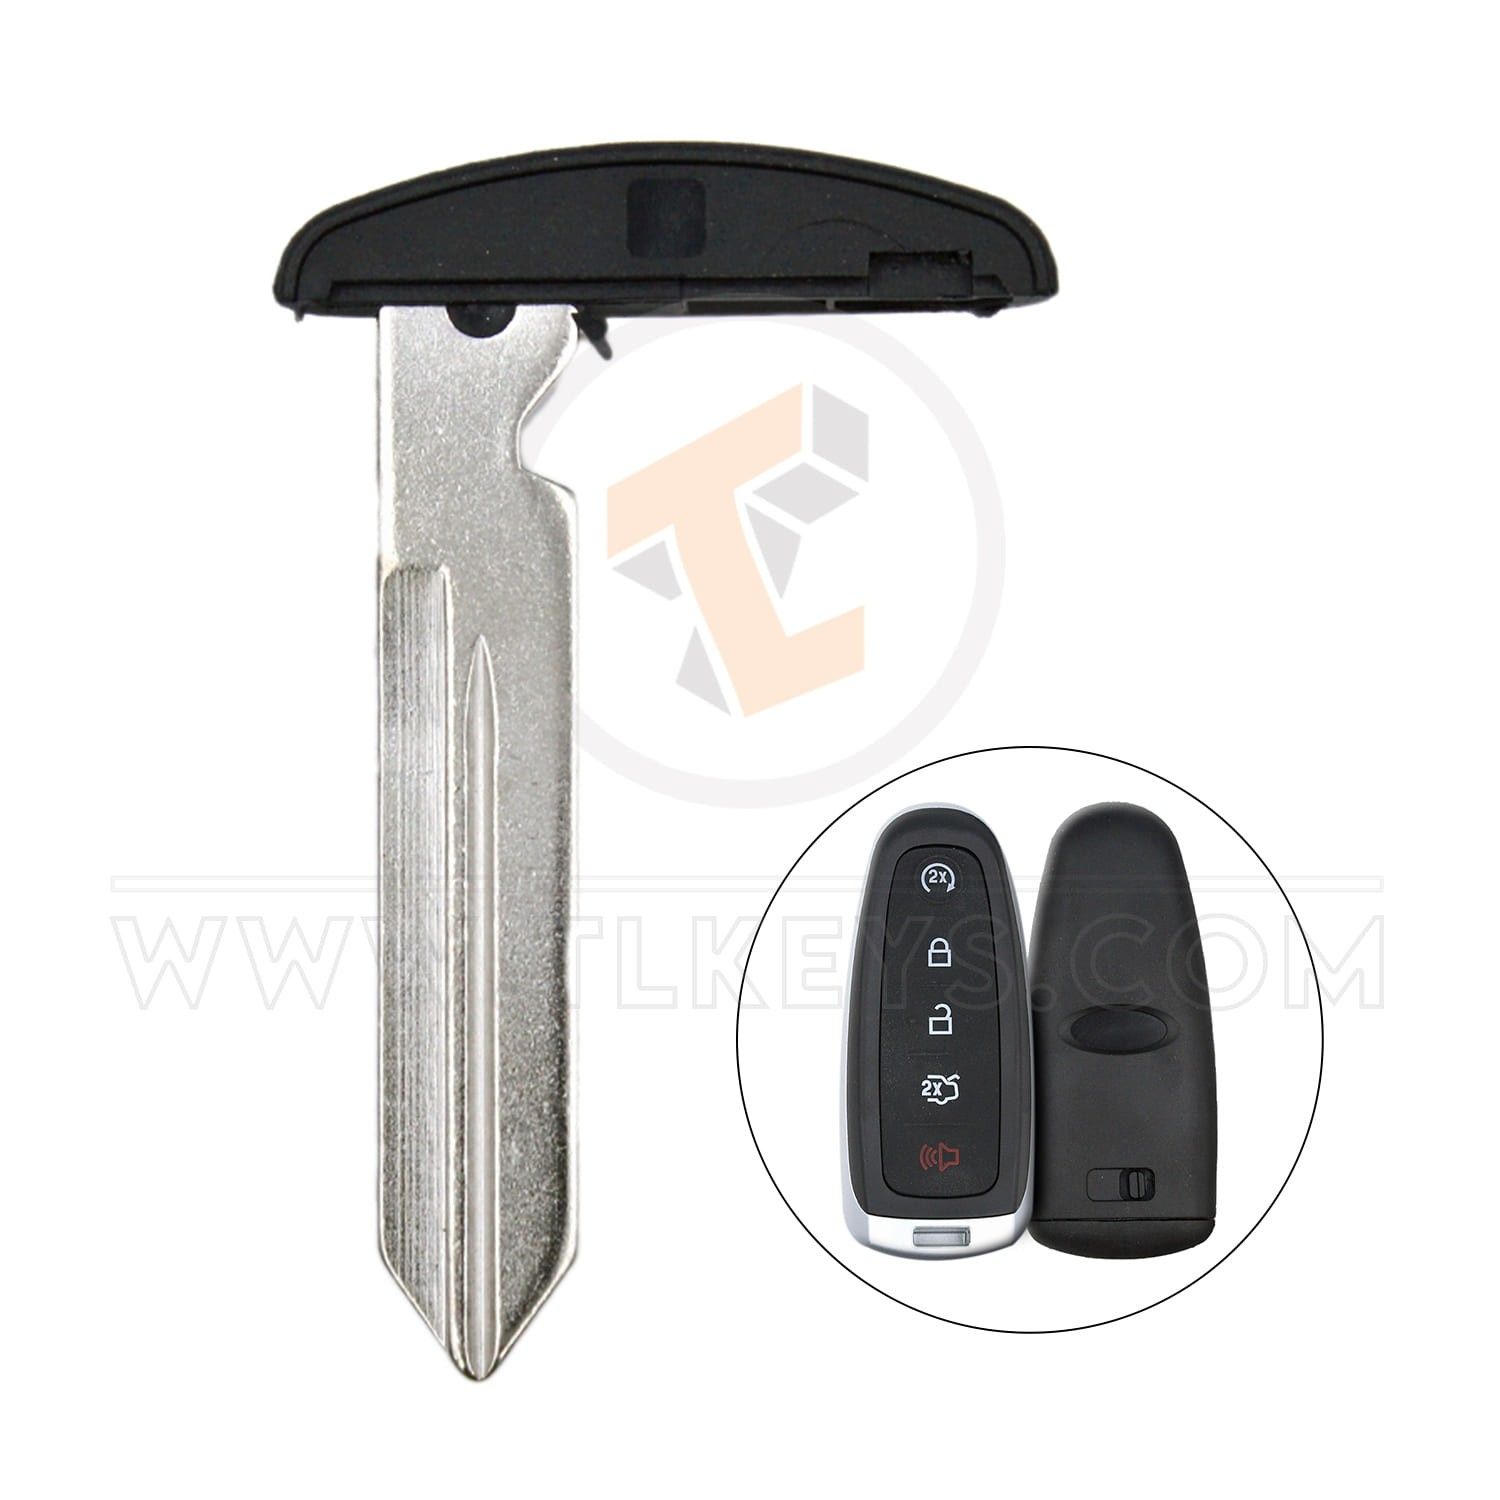 Emergency Key Blade For Ford PEPS Smart Key Fob Remote FCC ID M3N5WY8610